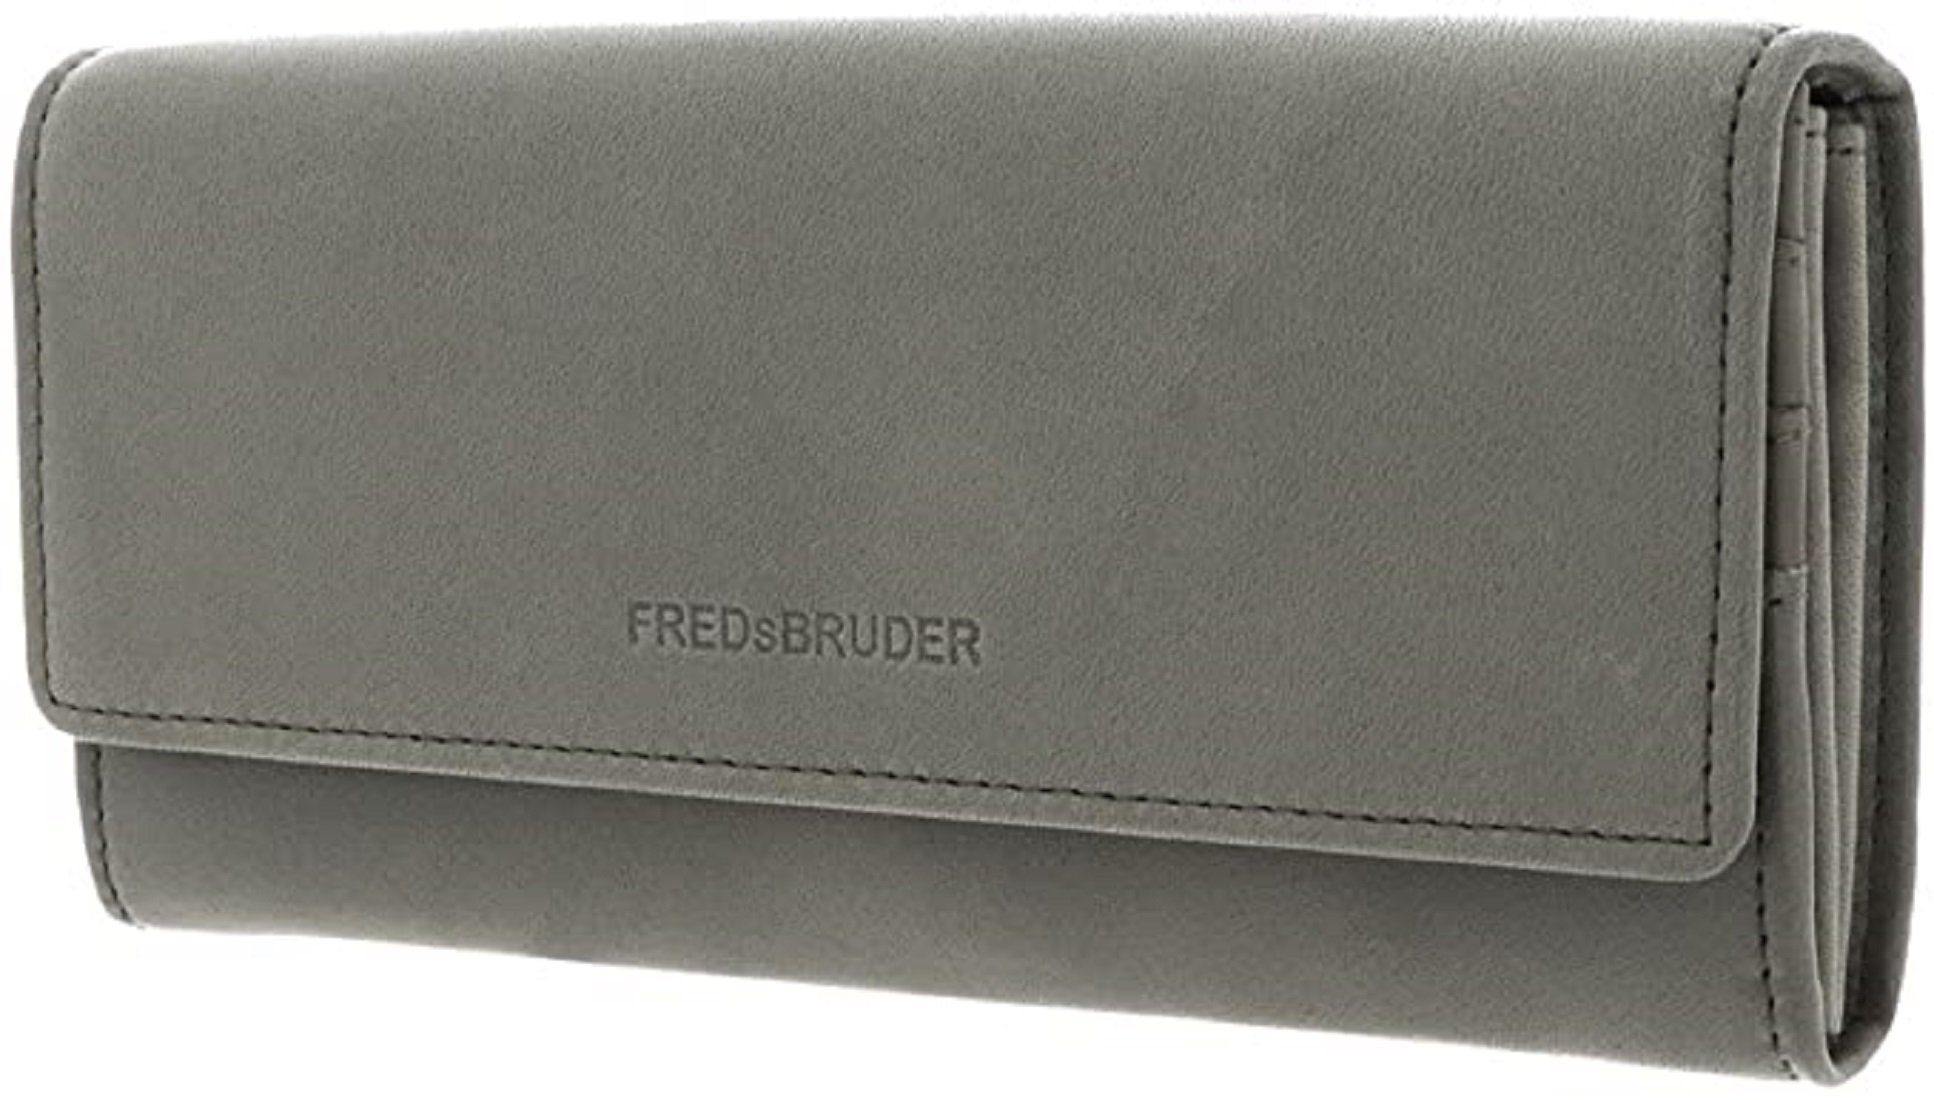 FredsBruder: Leder FREDsBRUDER Geldbörse echtes Geldbörse Flappy, weiches Wallet PGL olivgrün